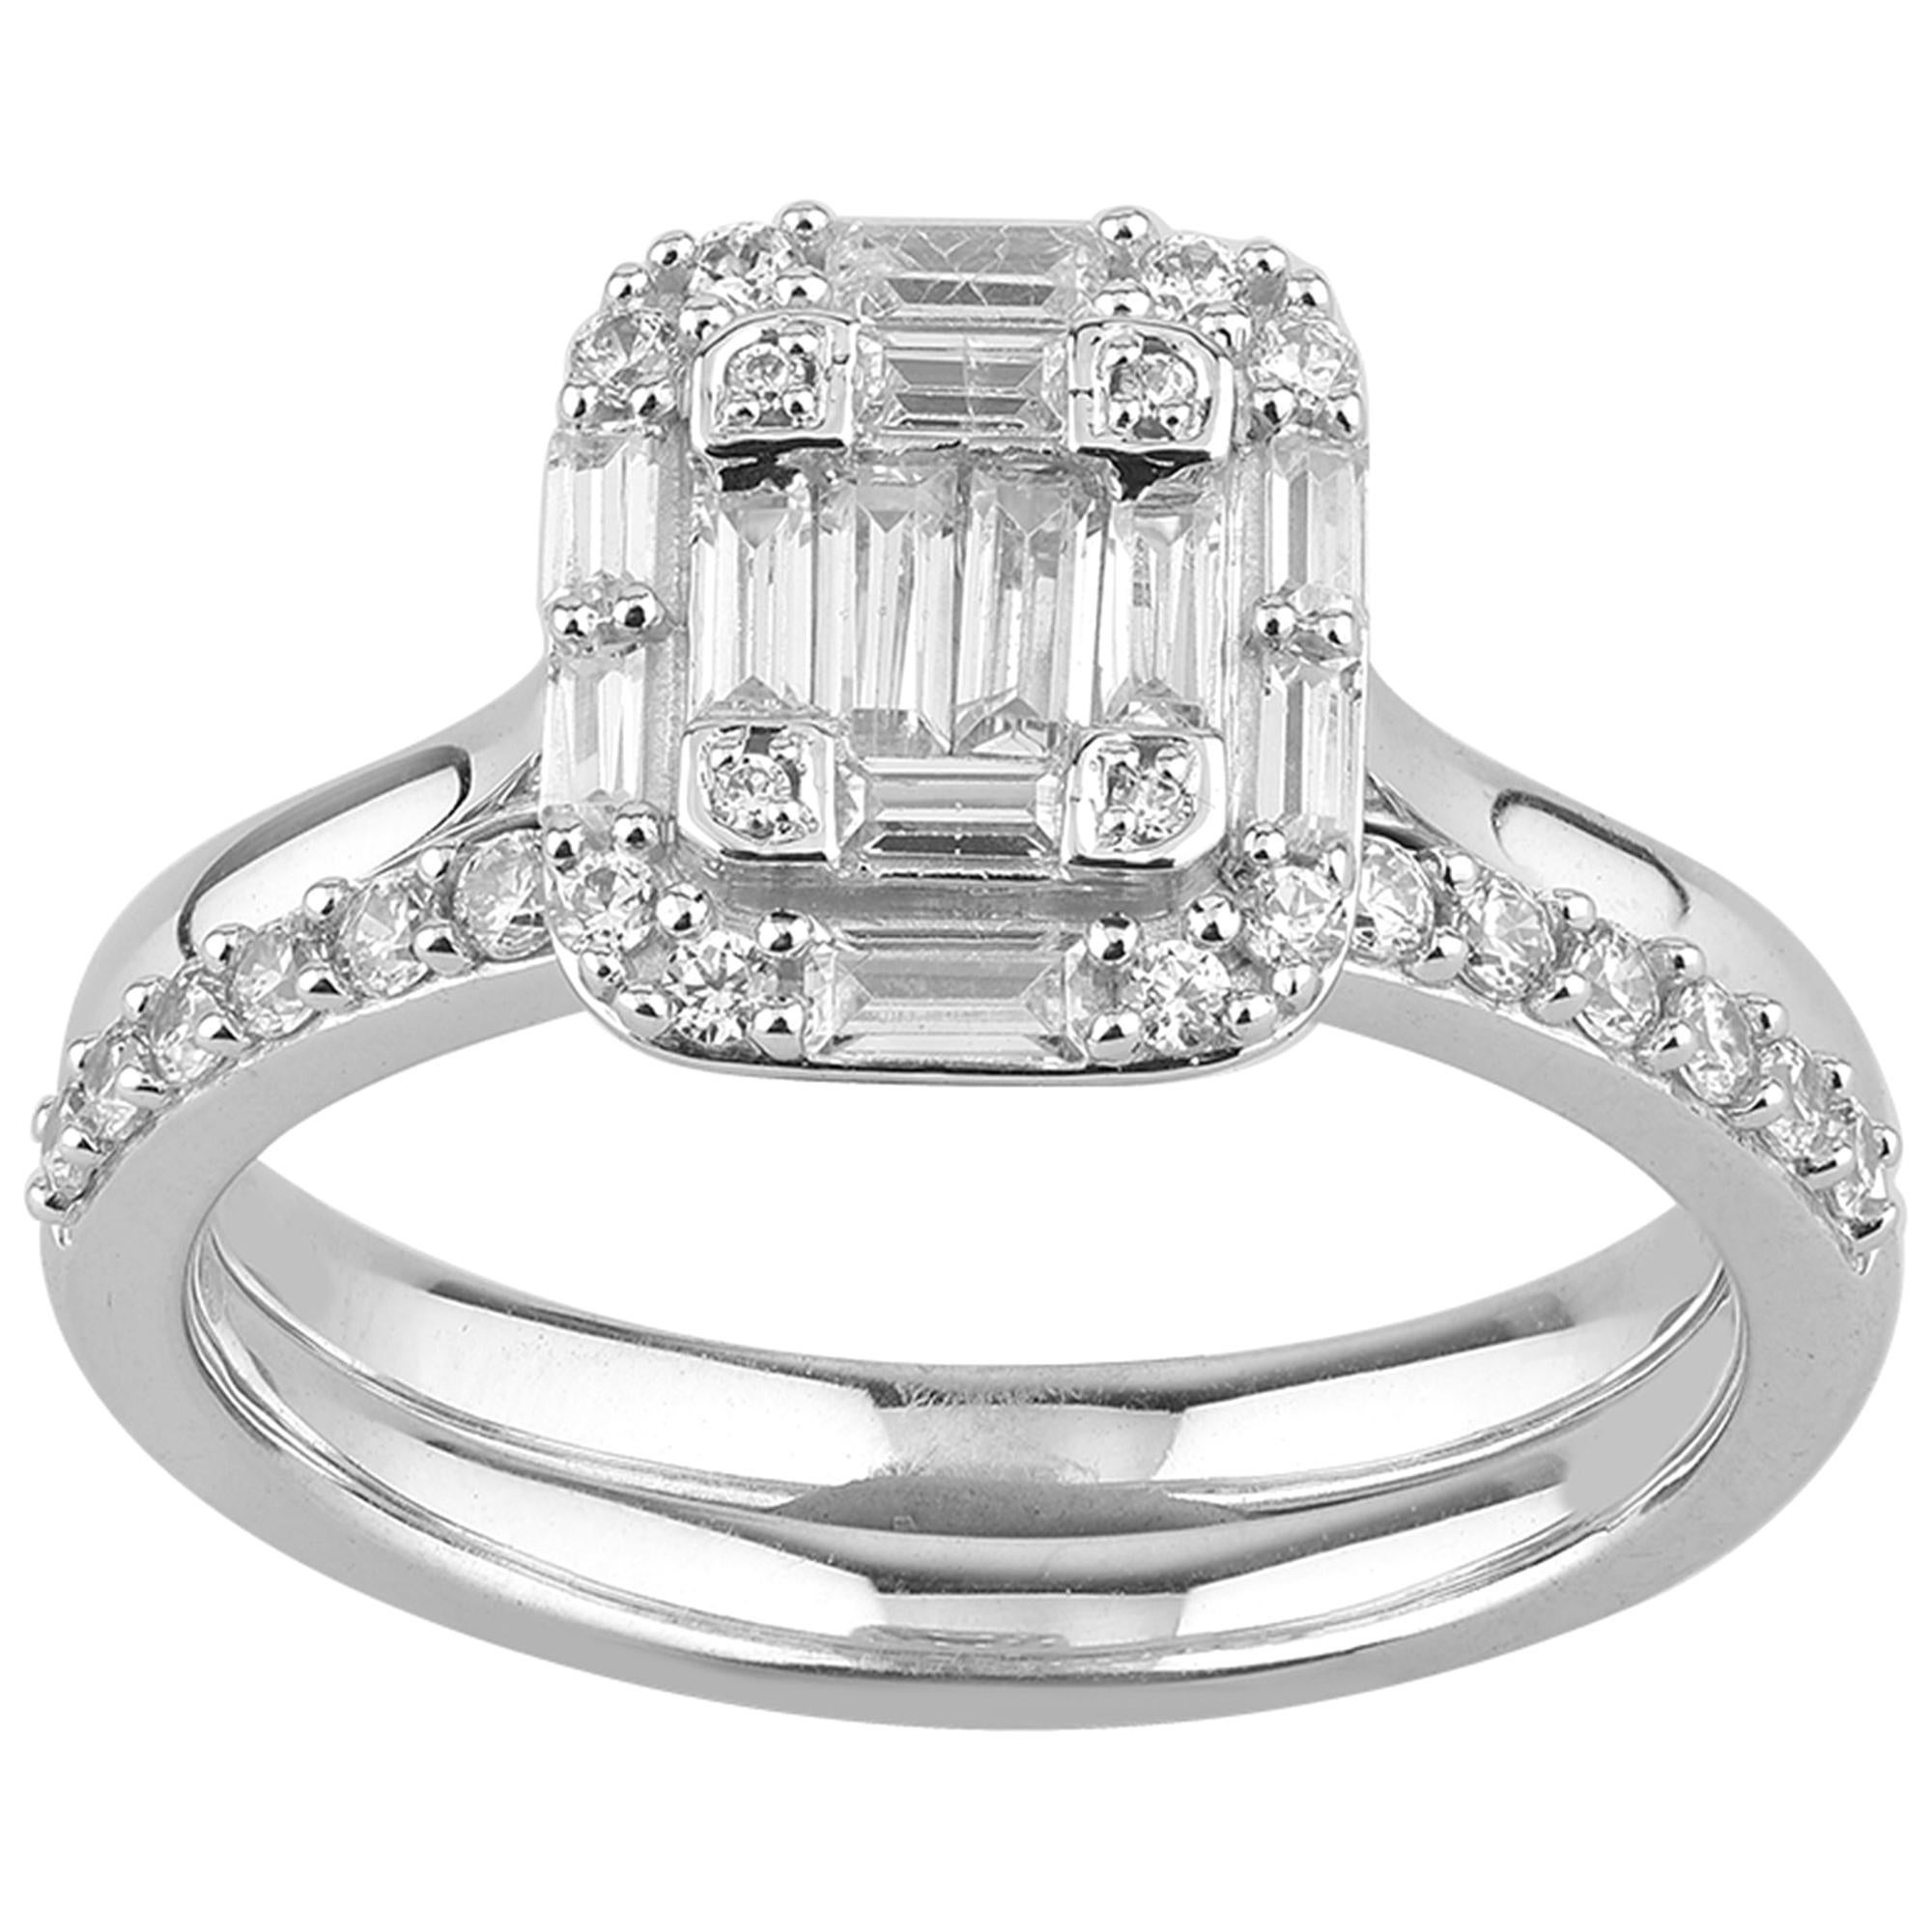 TJD Parure de mariée empilable en or blanc 14 carats avec diamants ronds et baguettes de 0,75 carat